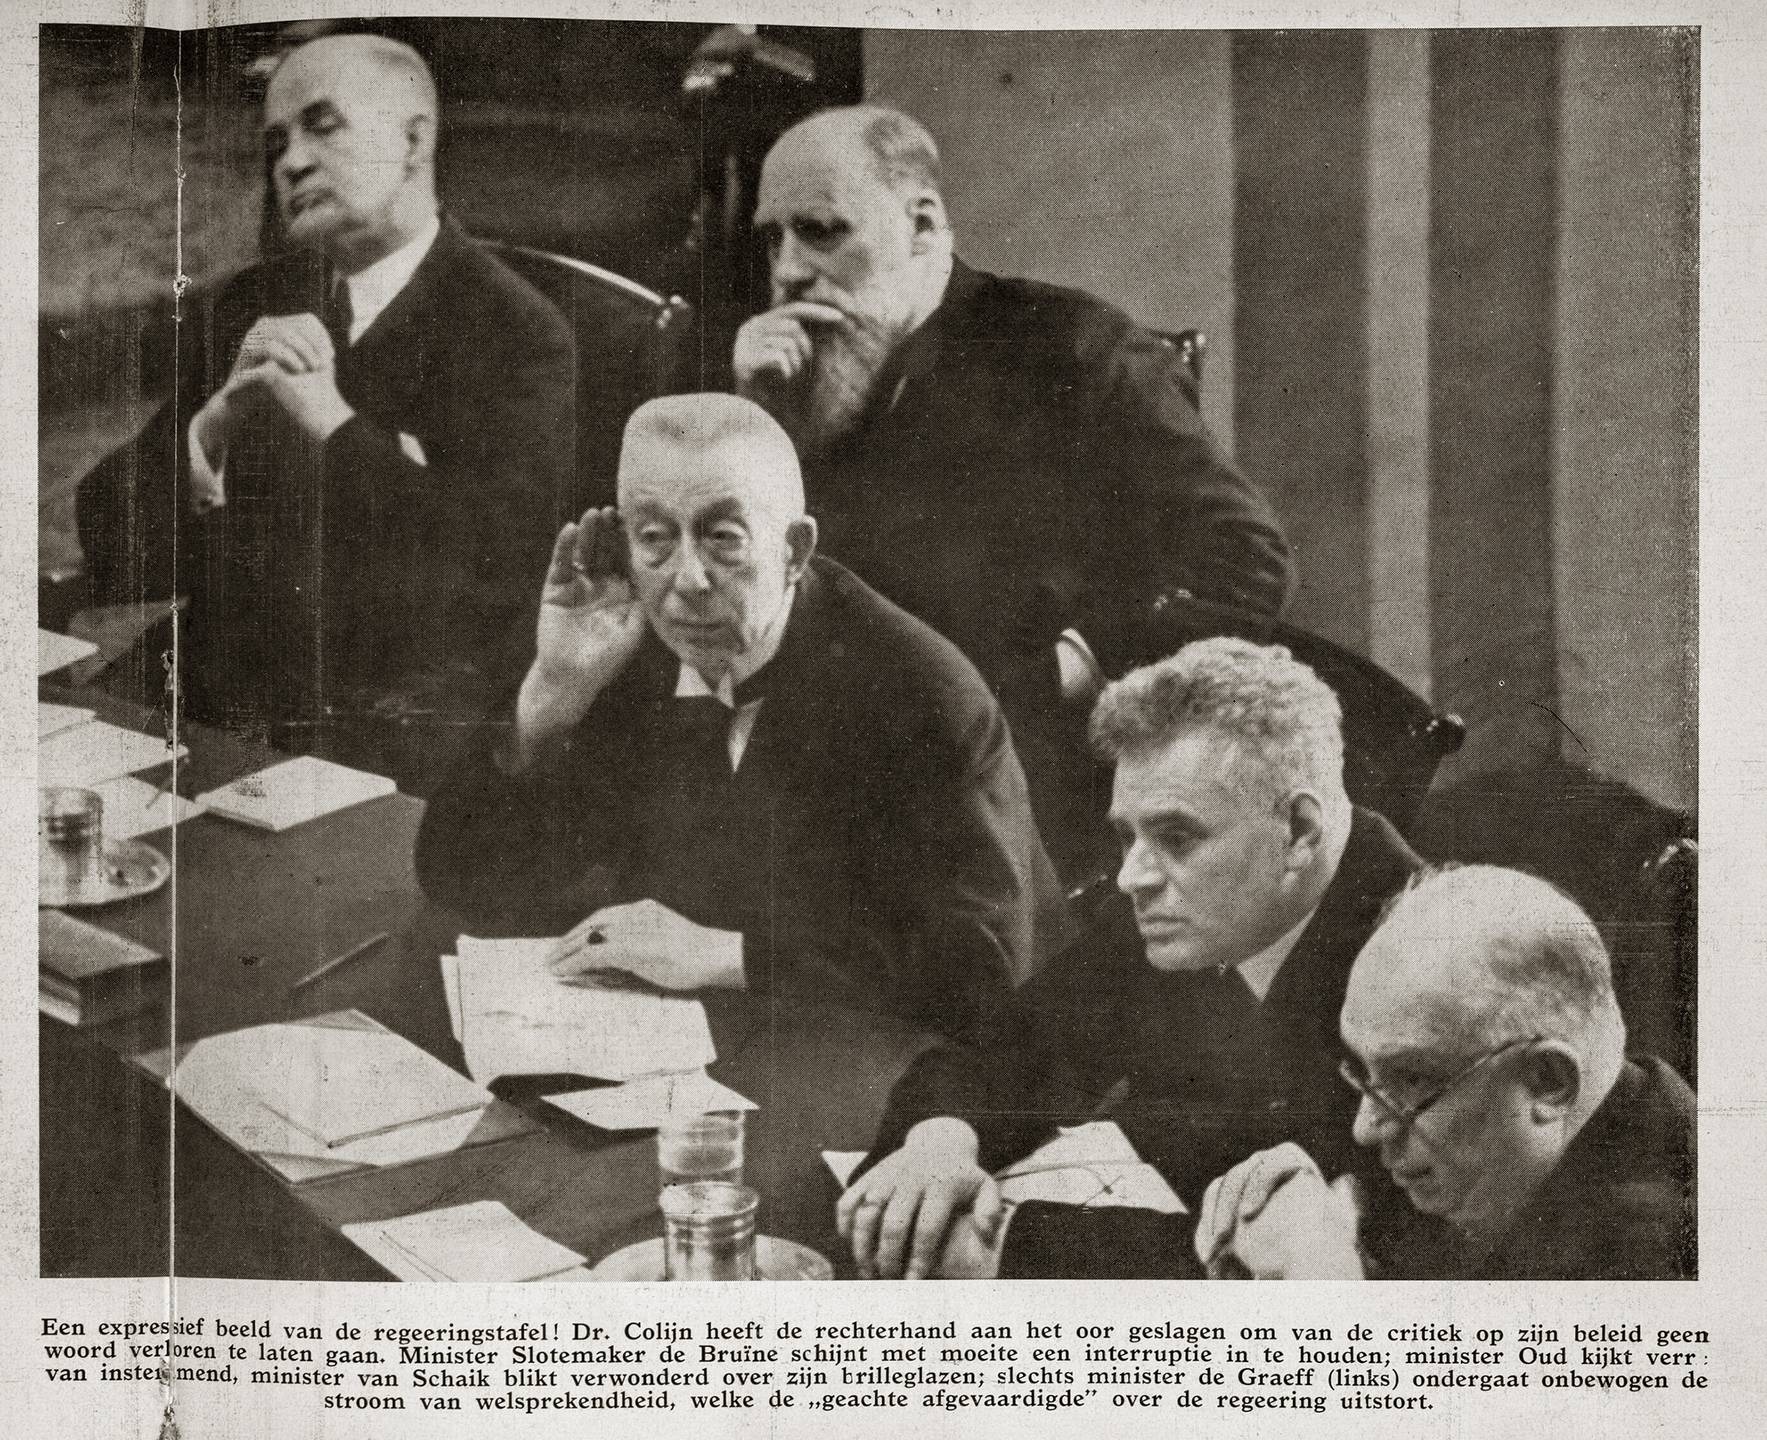 ‘Rechterhand aan het oor geslagen’. Foto: Erich Salomon, in: Het Leven, 22 febr. 1936.